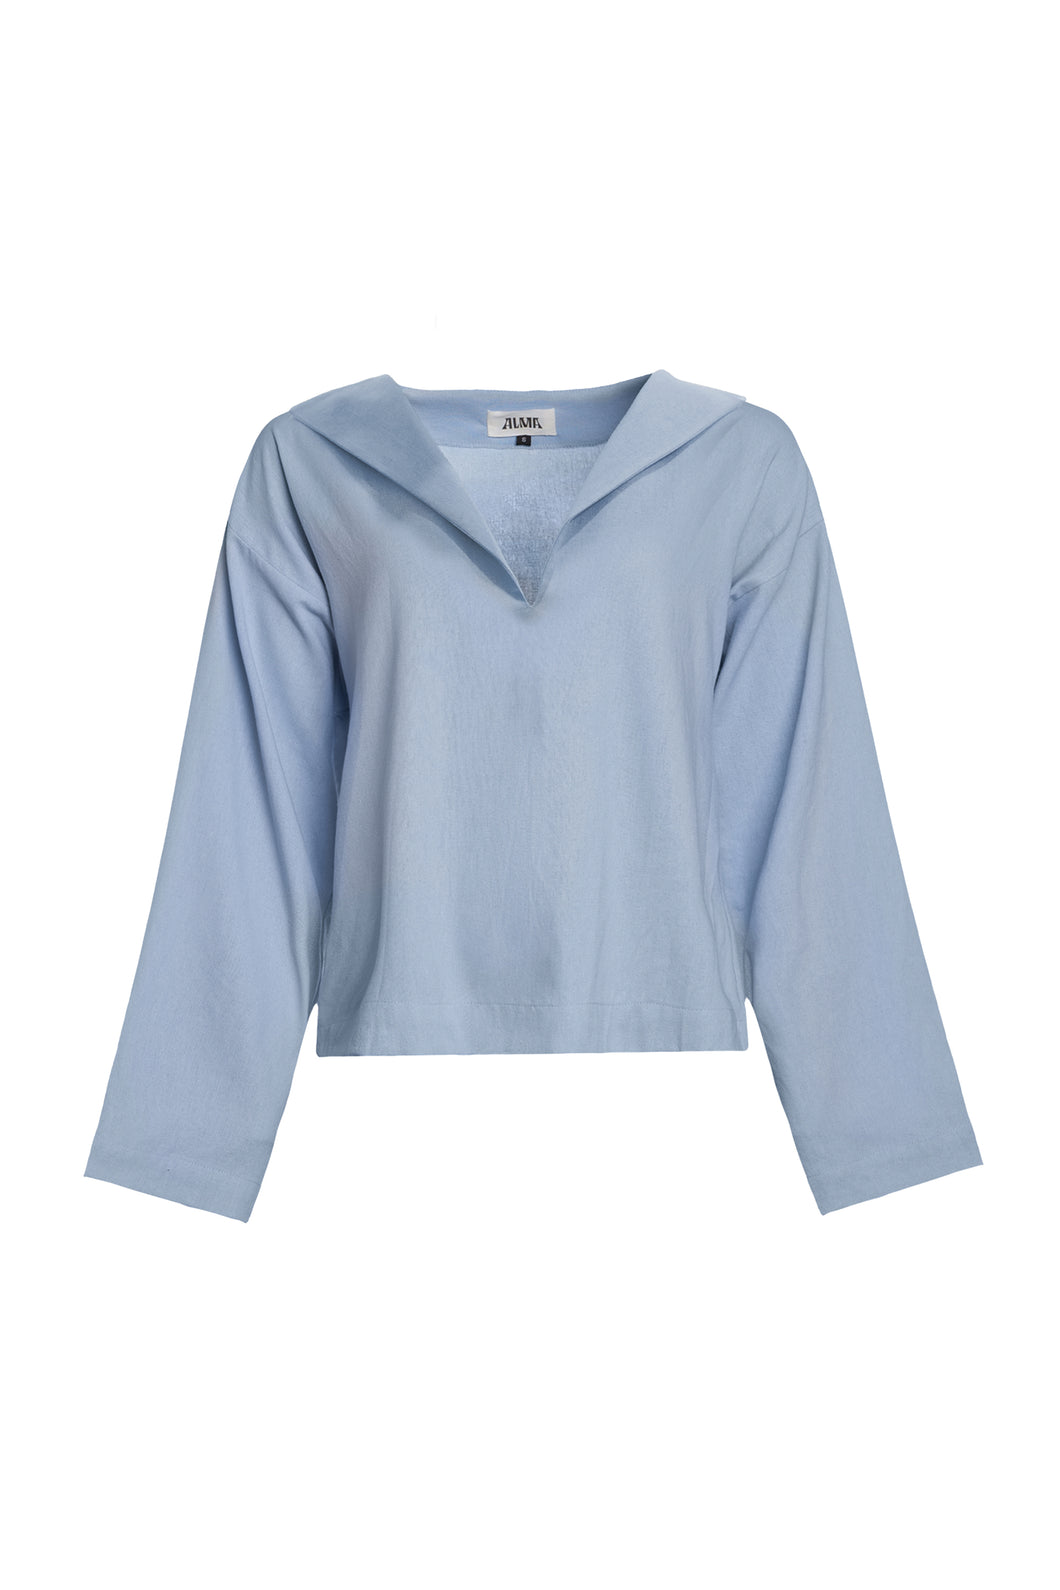 Challenger blouse 2.0 / pale blue